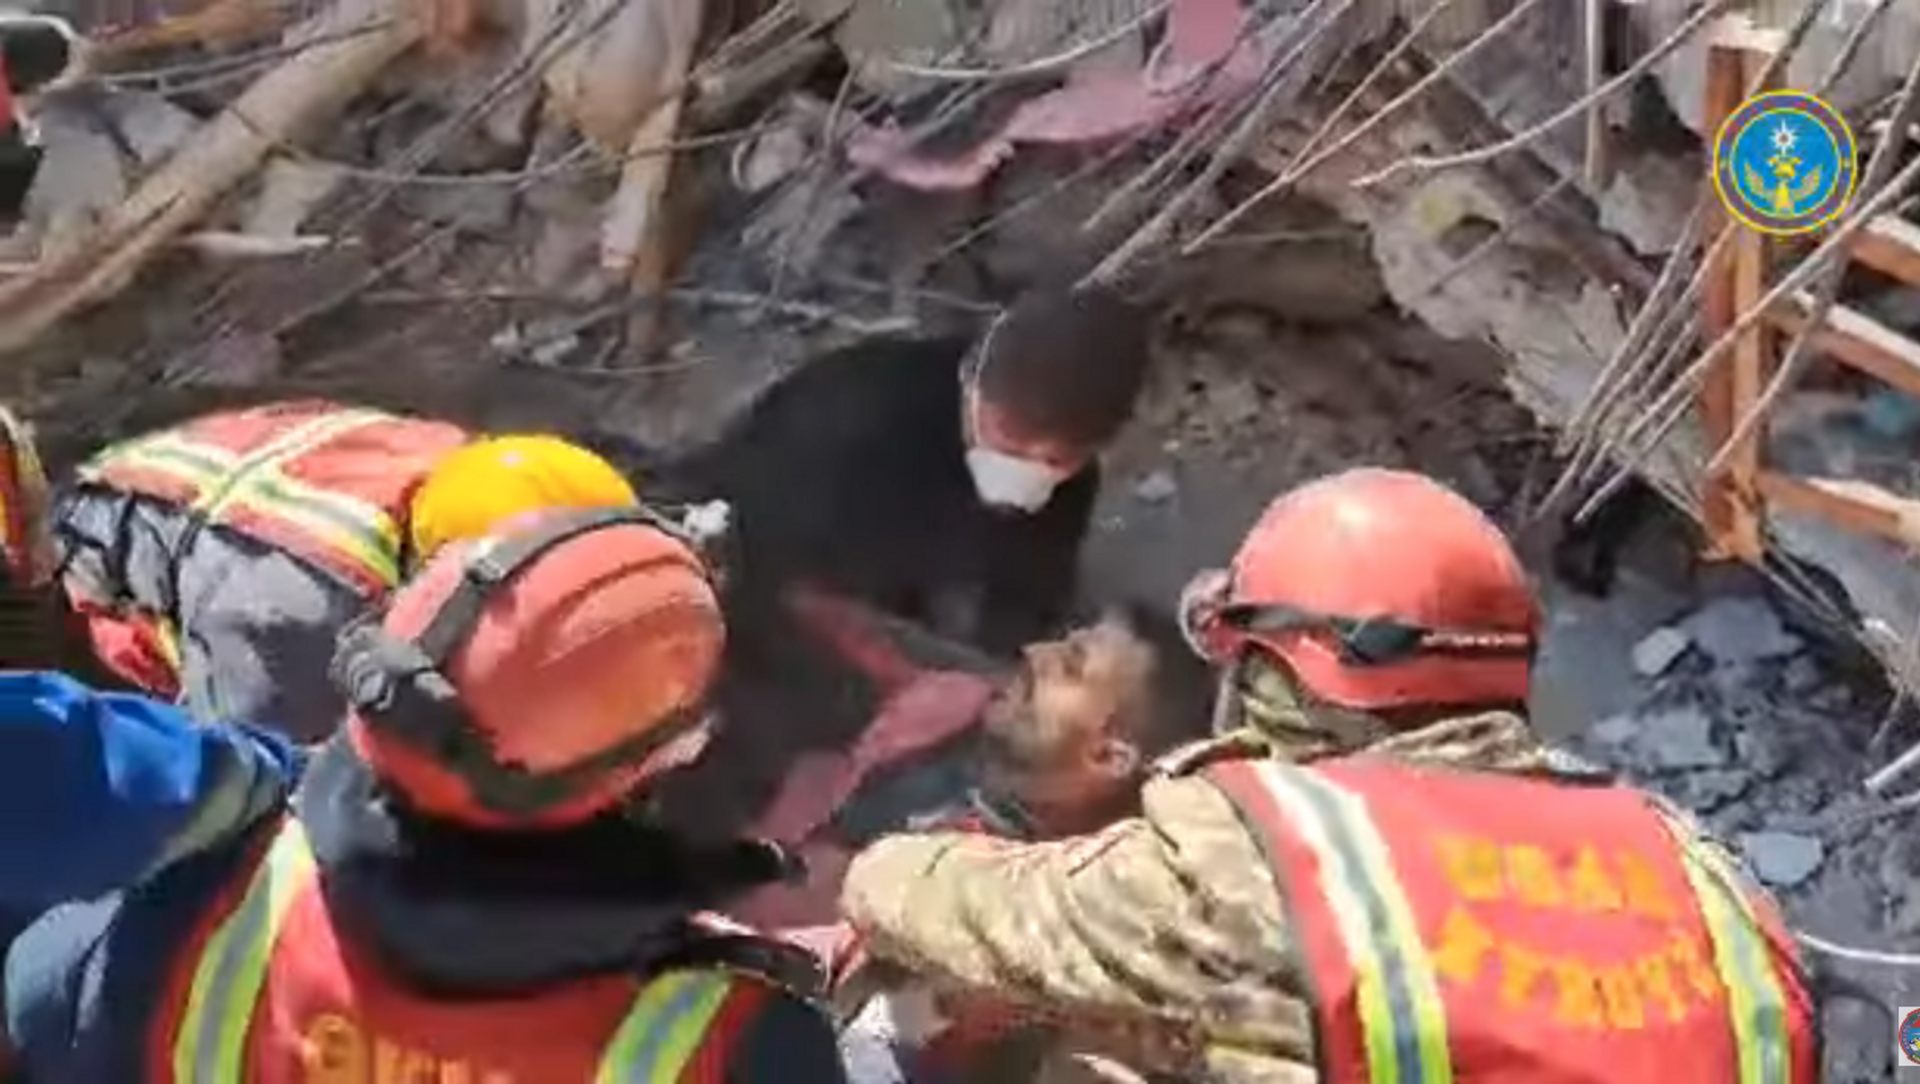 Мужчина спасенный из-под завалов в Турции сотрудниками МЧС Киргизии спустя 13 дней после землетрясения - РИА Новости, 1920, 19.02.2023